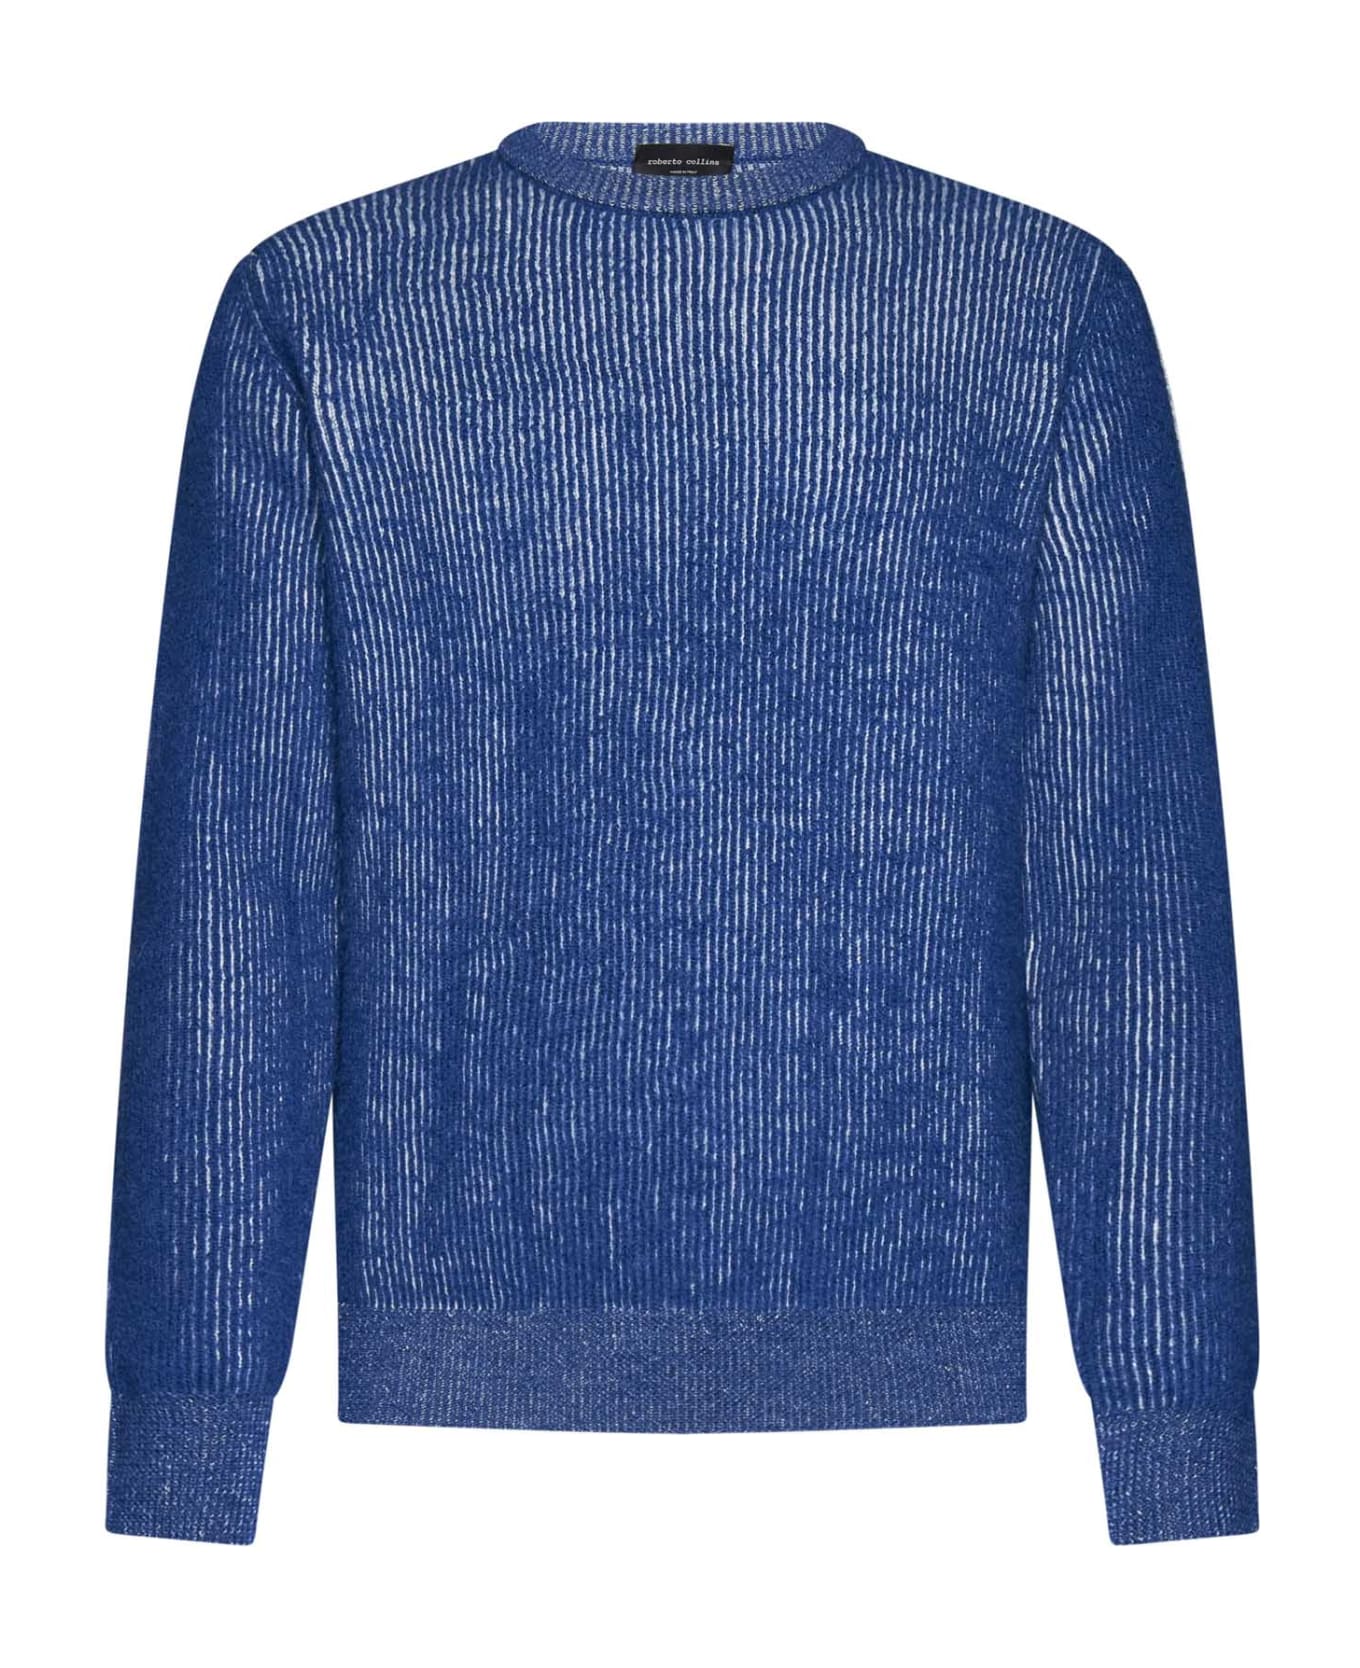 Roberto Collina Sweater - Bluette